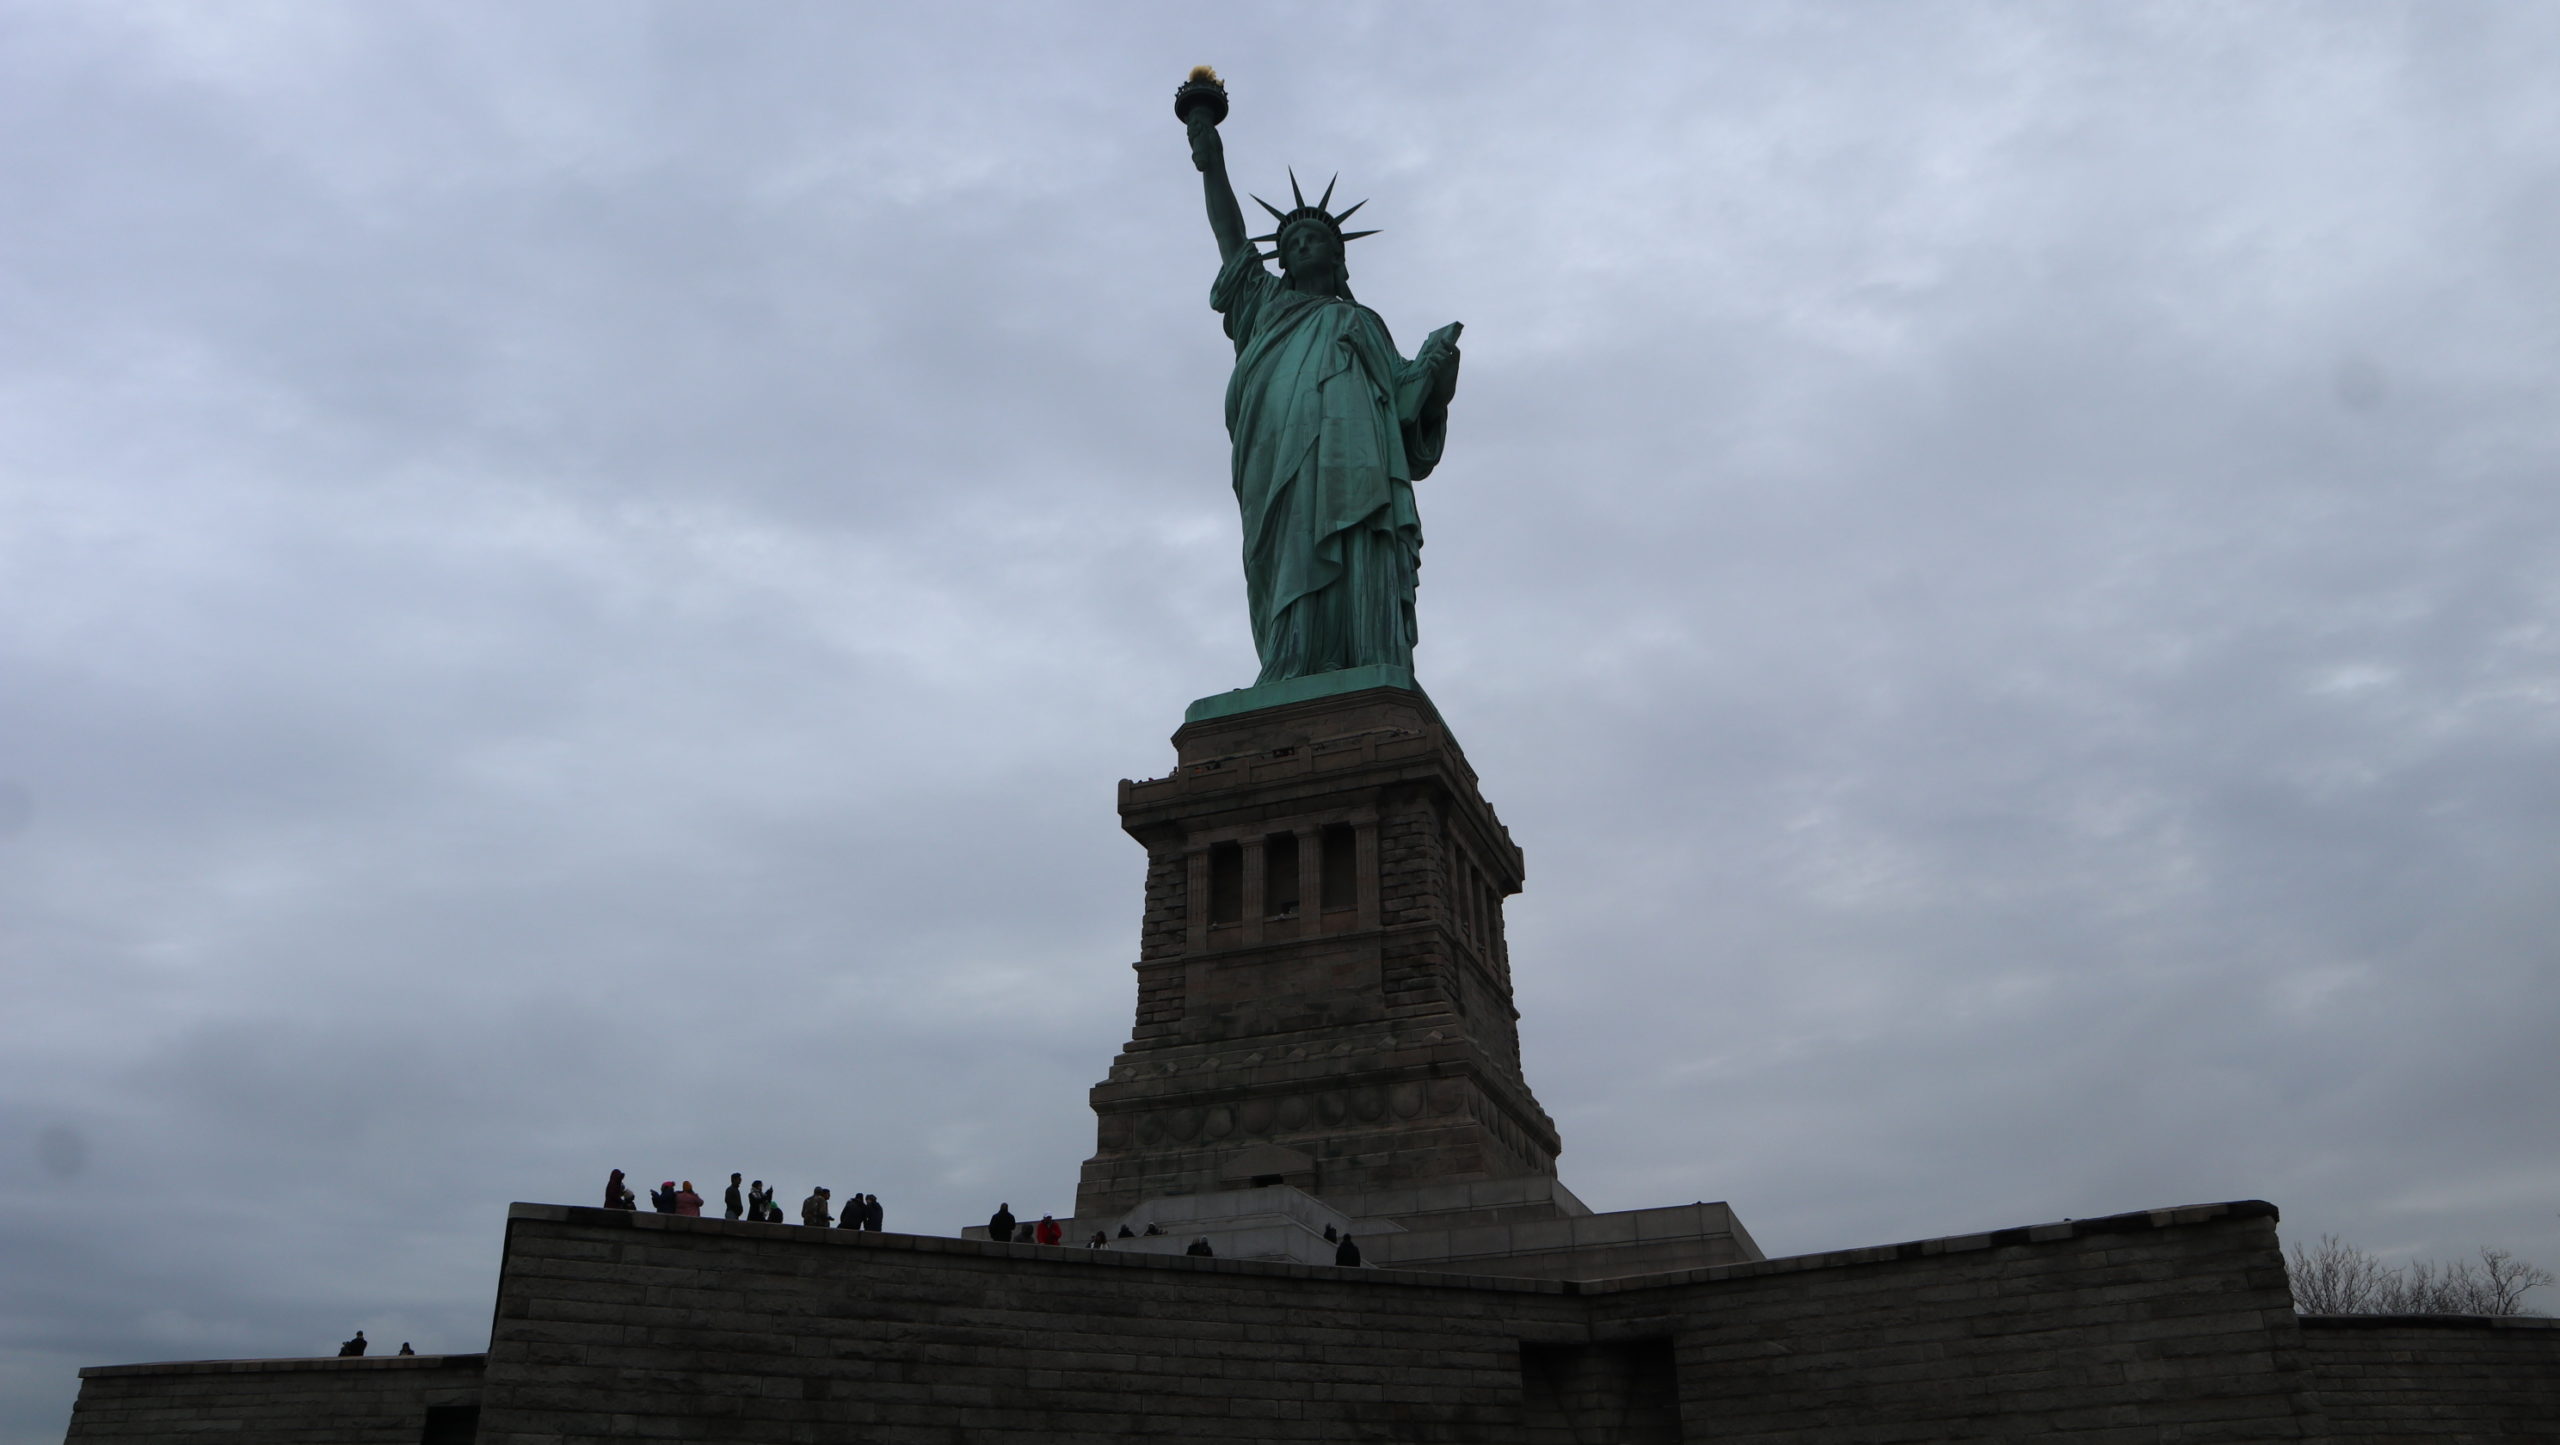 ニューヨーク 自由の女神像(Statue of Liberty)は行くべき？ – kino-global